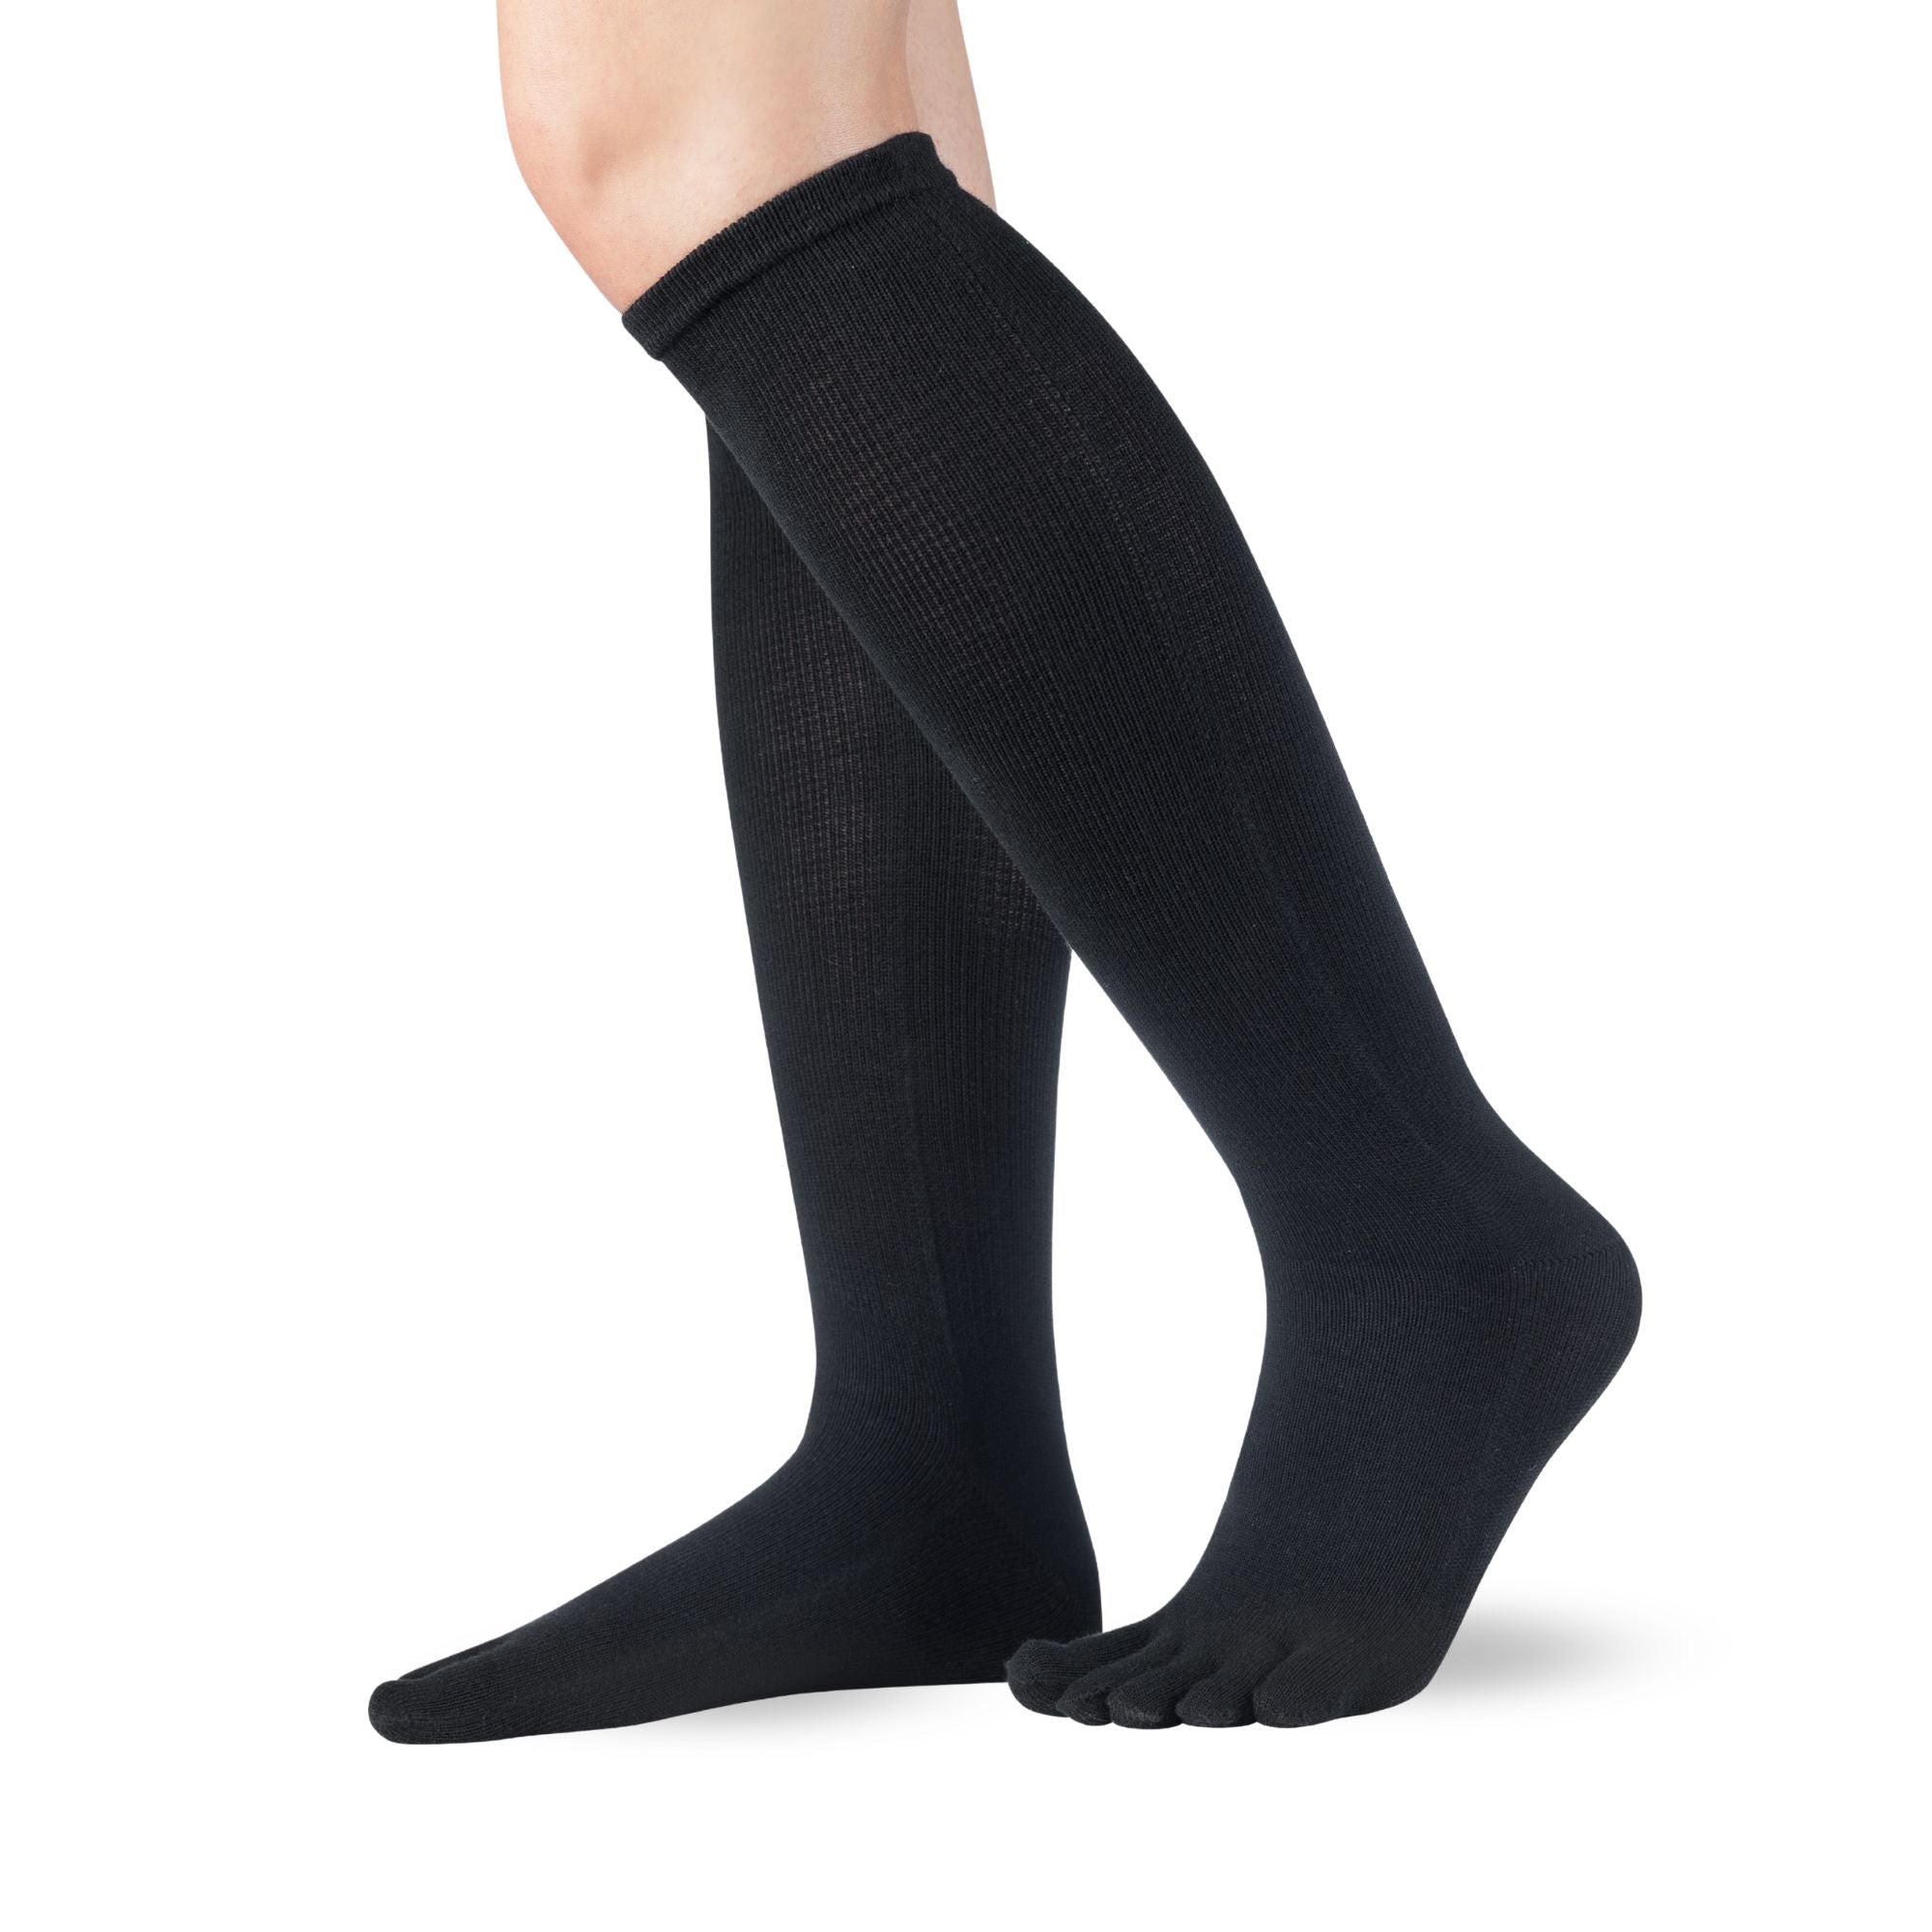 Knitido Essentials medias (algodón) hasta la rodilla de lado en negro